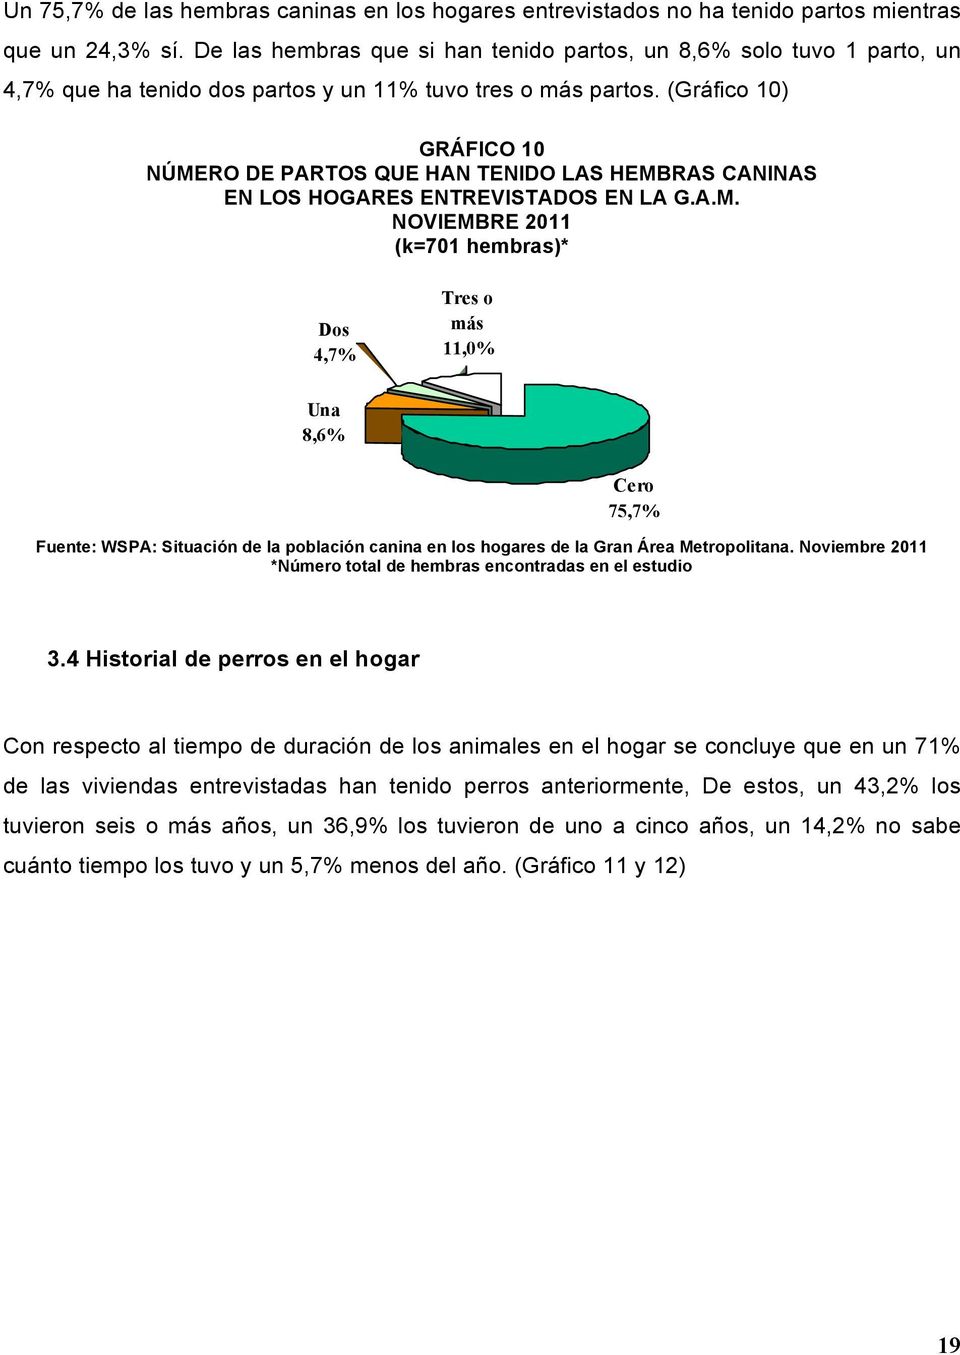 (Gráfico 10) GRÁFICO 10 NÚMERO DE PARTOS QUE HAN TENIDO LAS HEMBRAS CANINAS EN LOS HOGARES ENTREVISTADOS EN LA G.A.M. NOVIEMBRE 2011 (k=701 hembras)* Dos 4,7% Tres o más 11,0% Una 8,6% Cero 75,7% *Número total de hembras encontradas en el estudio 3.